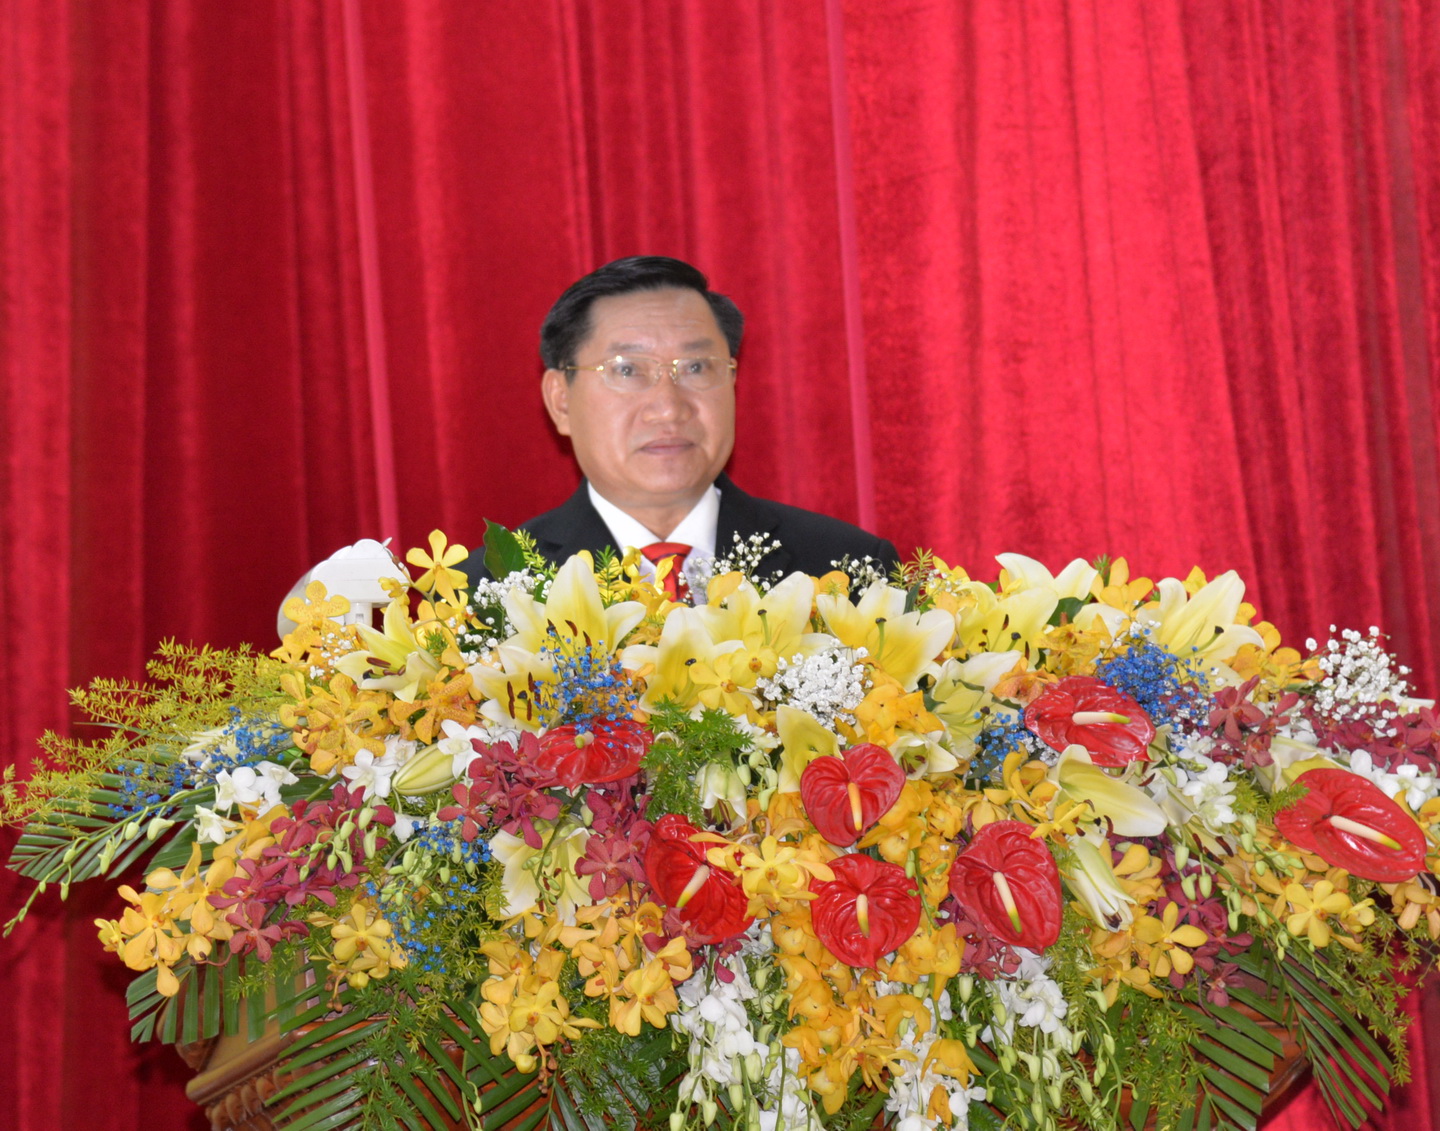 Đồng chí Đặng Thanh Liêm, Bí thư Thành ủy Mỹ Tho nhiệm kỳ 2015-2020 phát biểu khai mạc đại hội